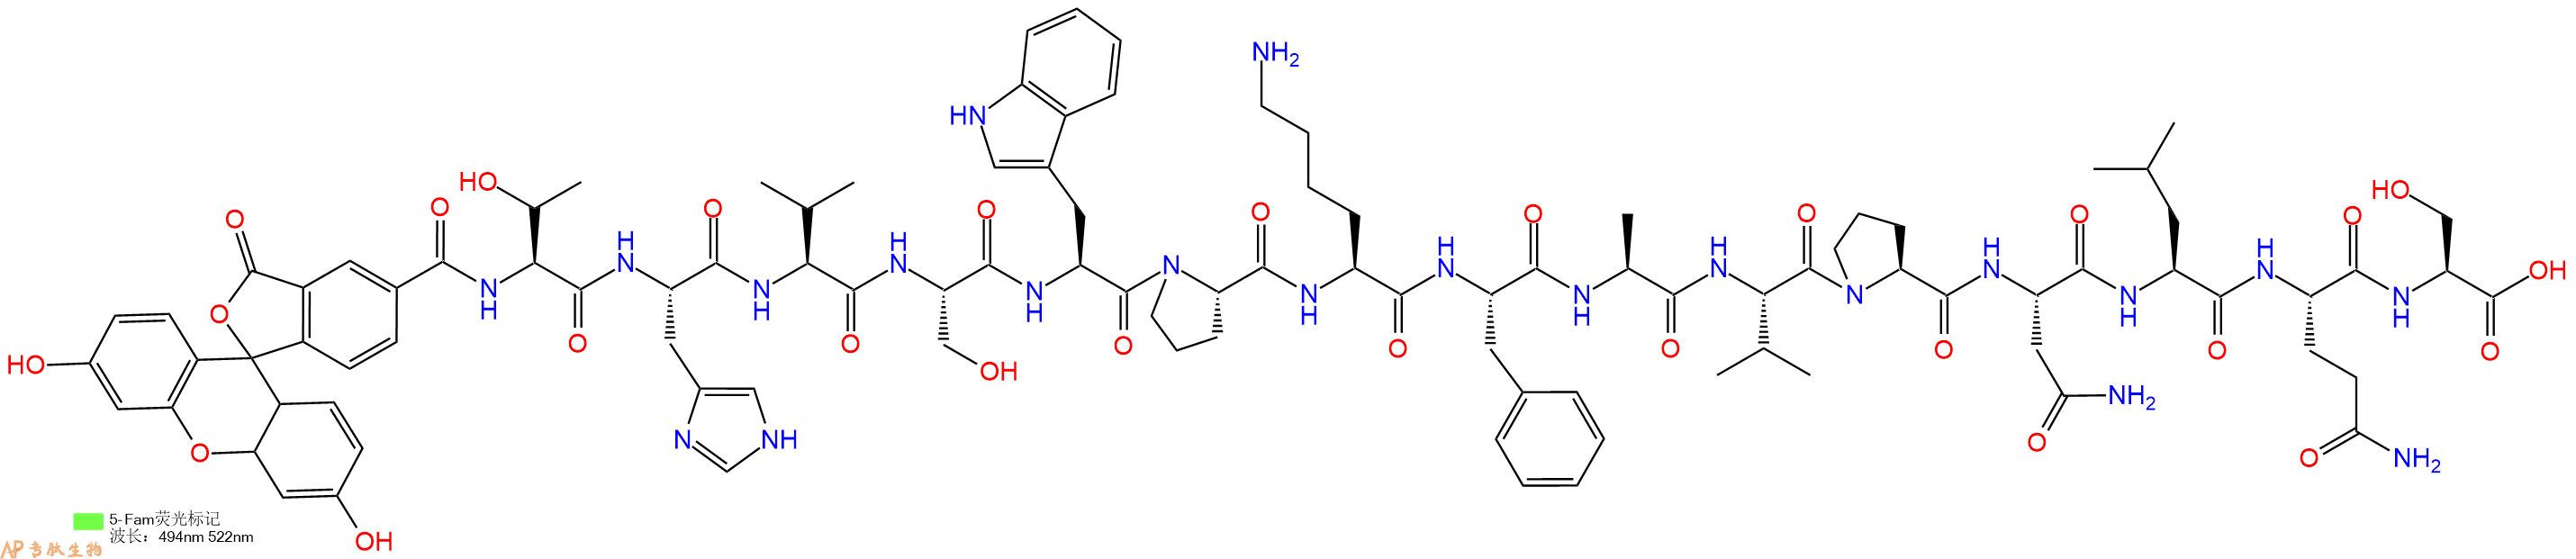 专肽生物产品5FAM-Thr-His-Val-Ser-Trp-Pro-Lys-Phe-Ala-Val-Pro-A